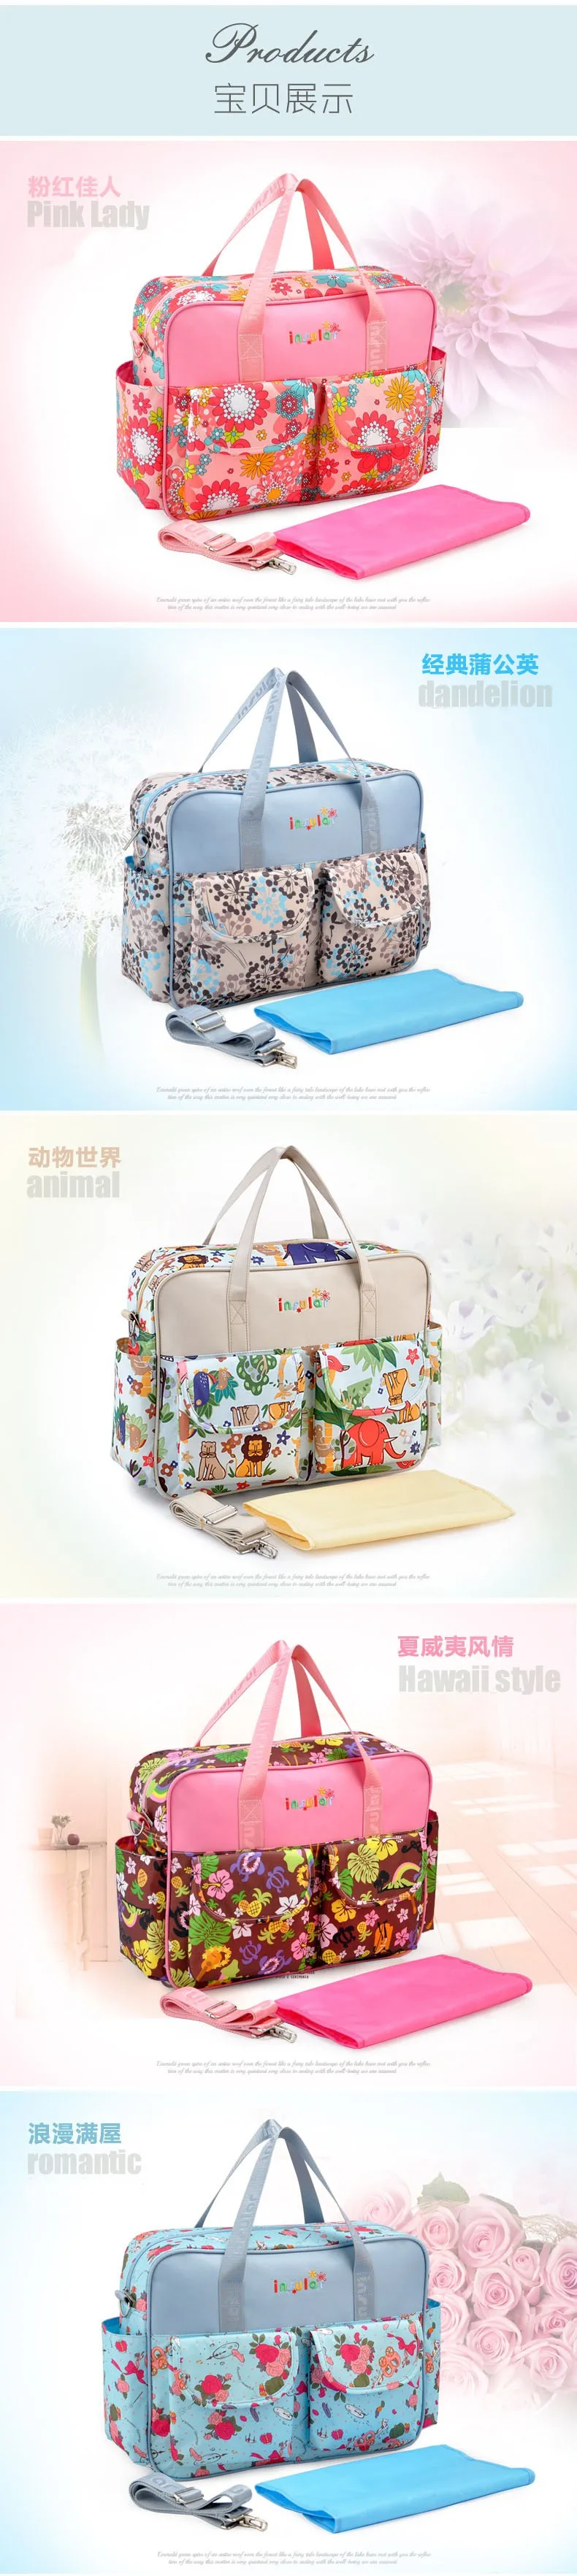 Детские Пеленки сумки брендовые многофункциональные модные цветочные подгузники сумка для мамы для коляски Детские Водонепроницаемые портативные сумки для мамы